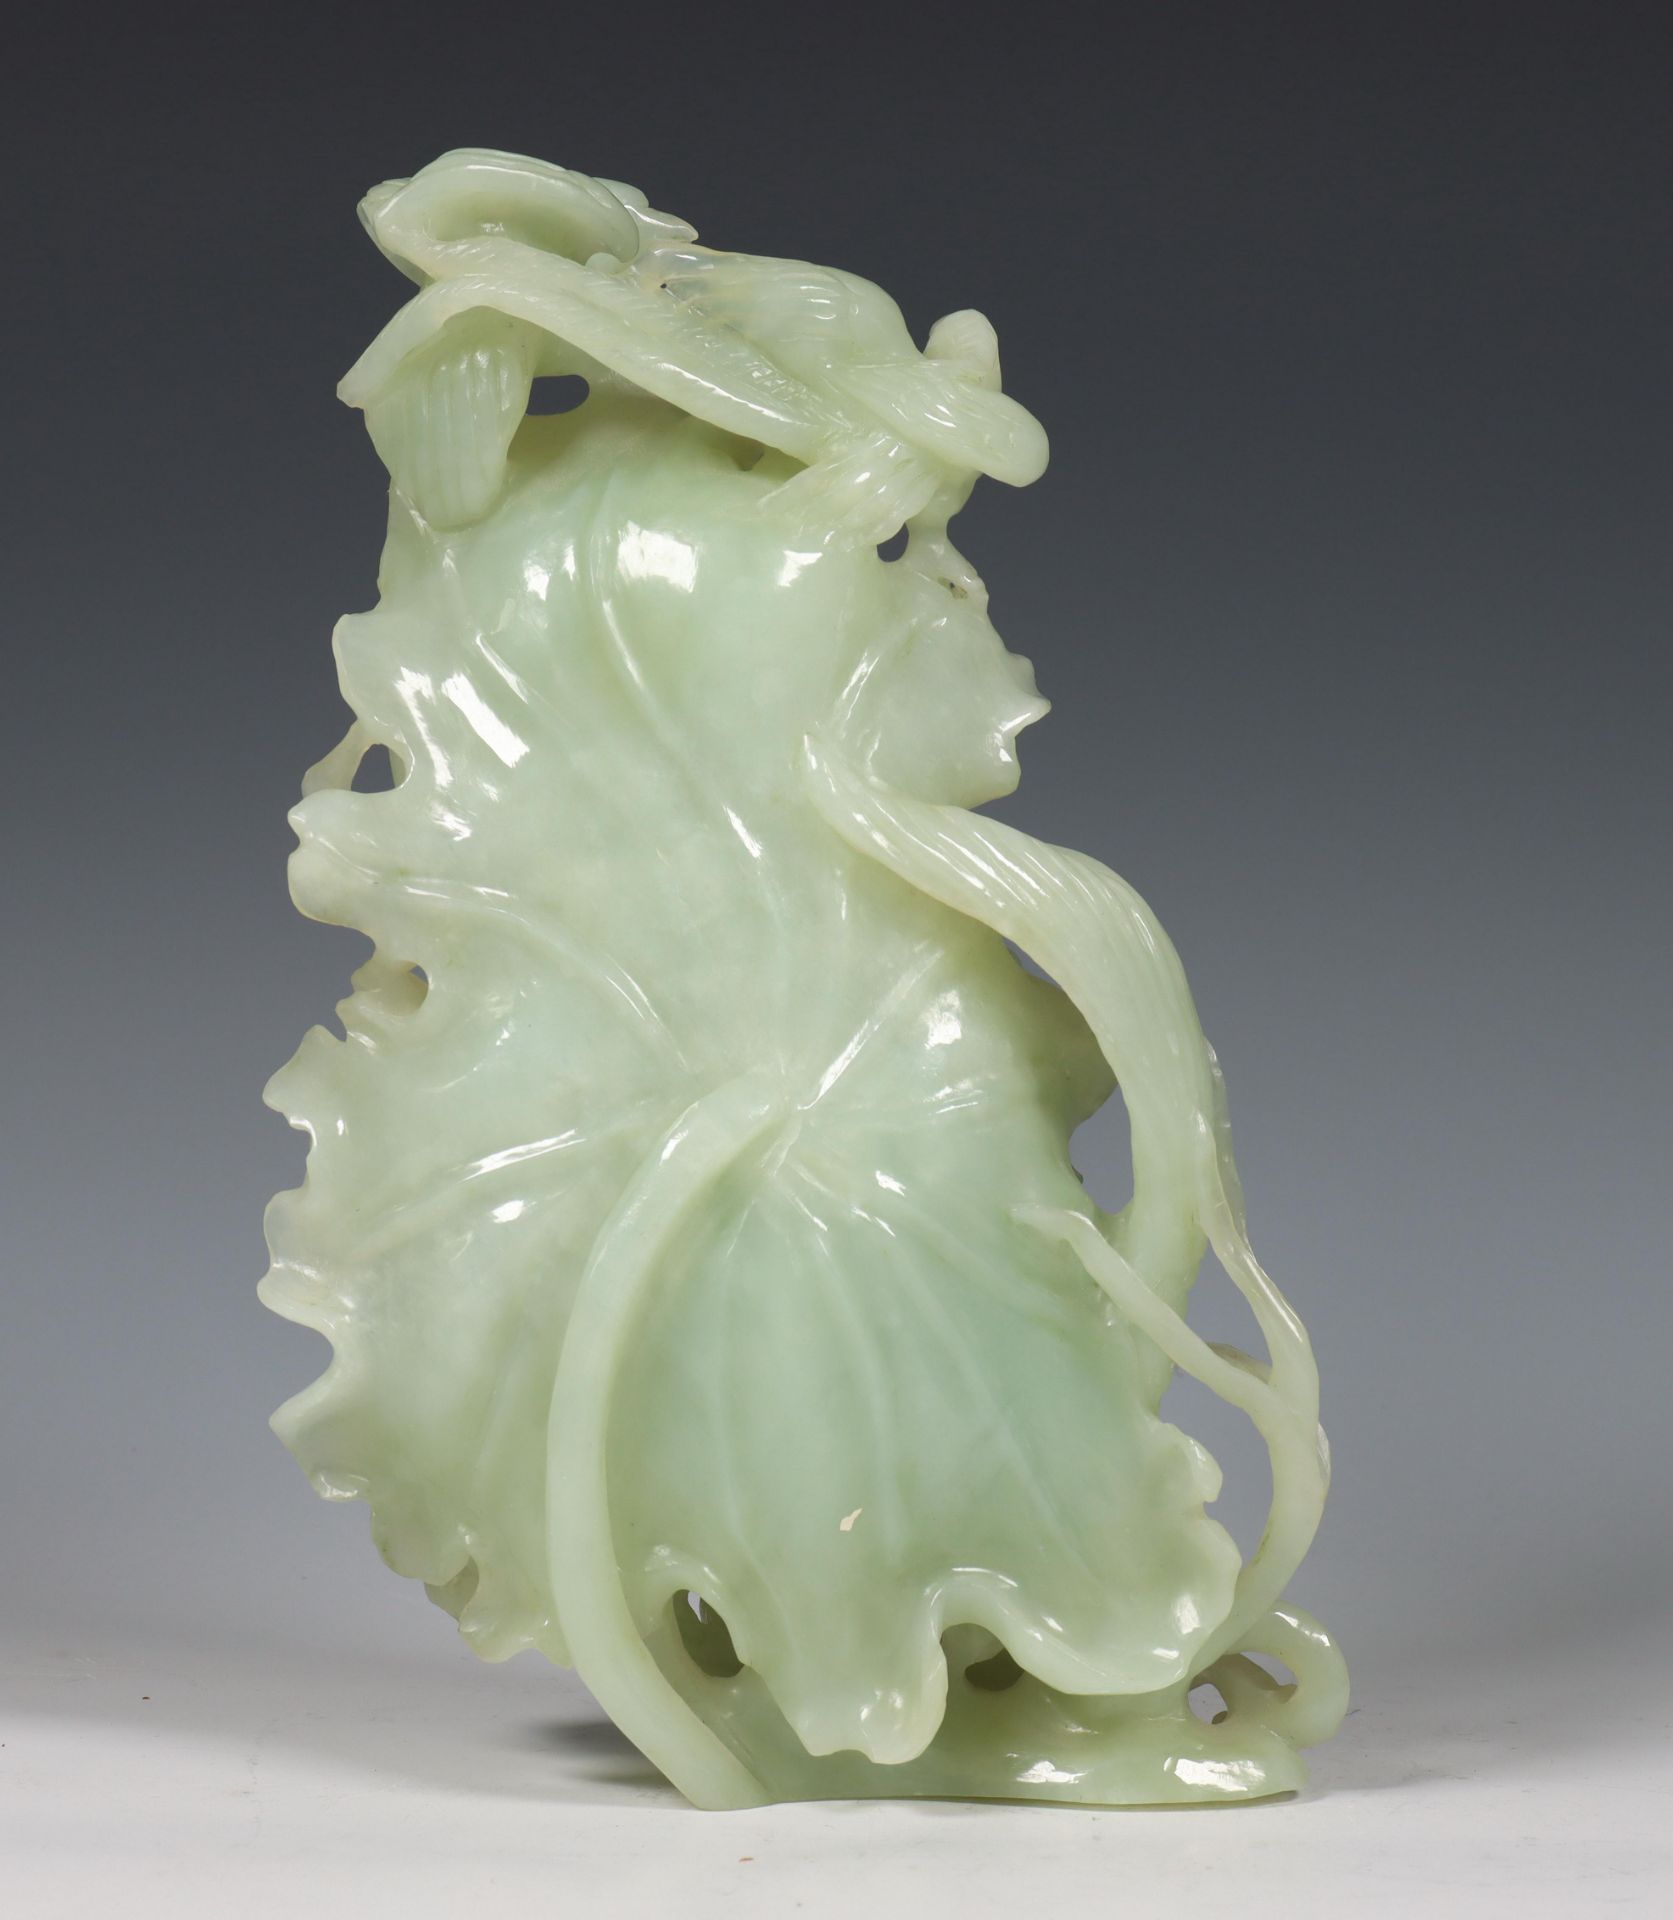 China, jadeiet snijwerk, 20e eeuw, - Image 4 of 5